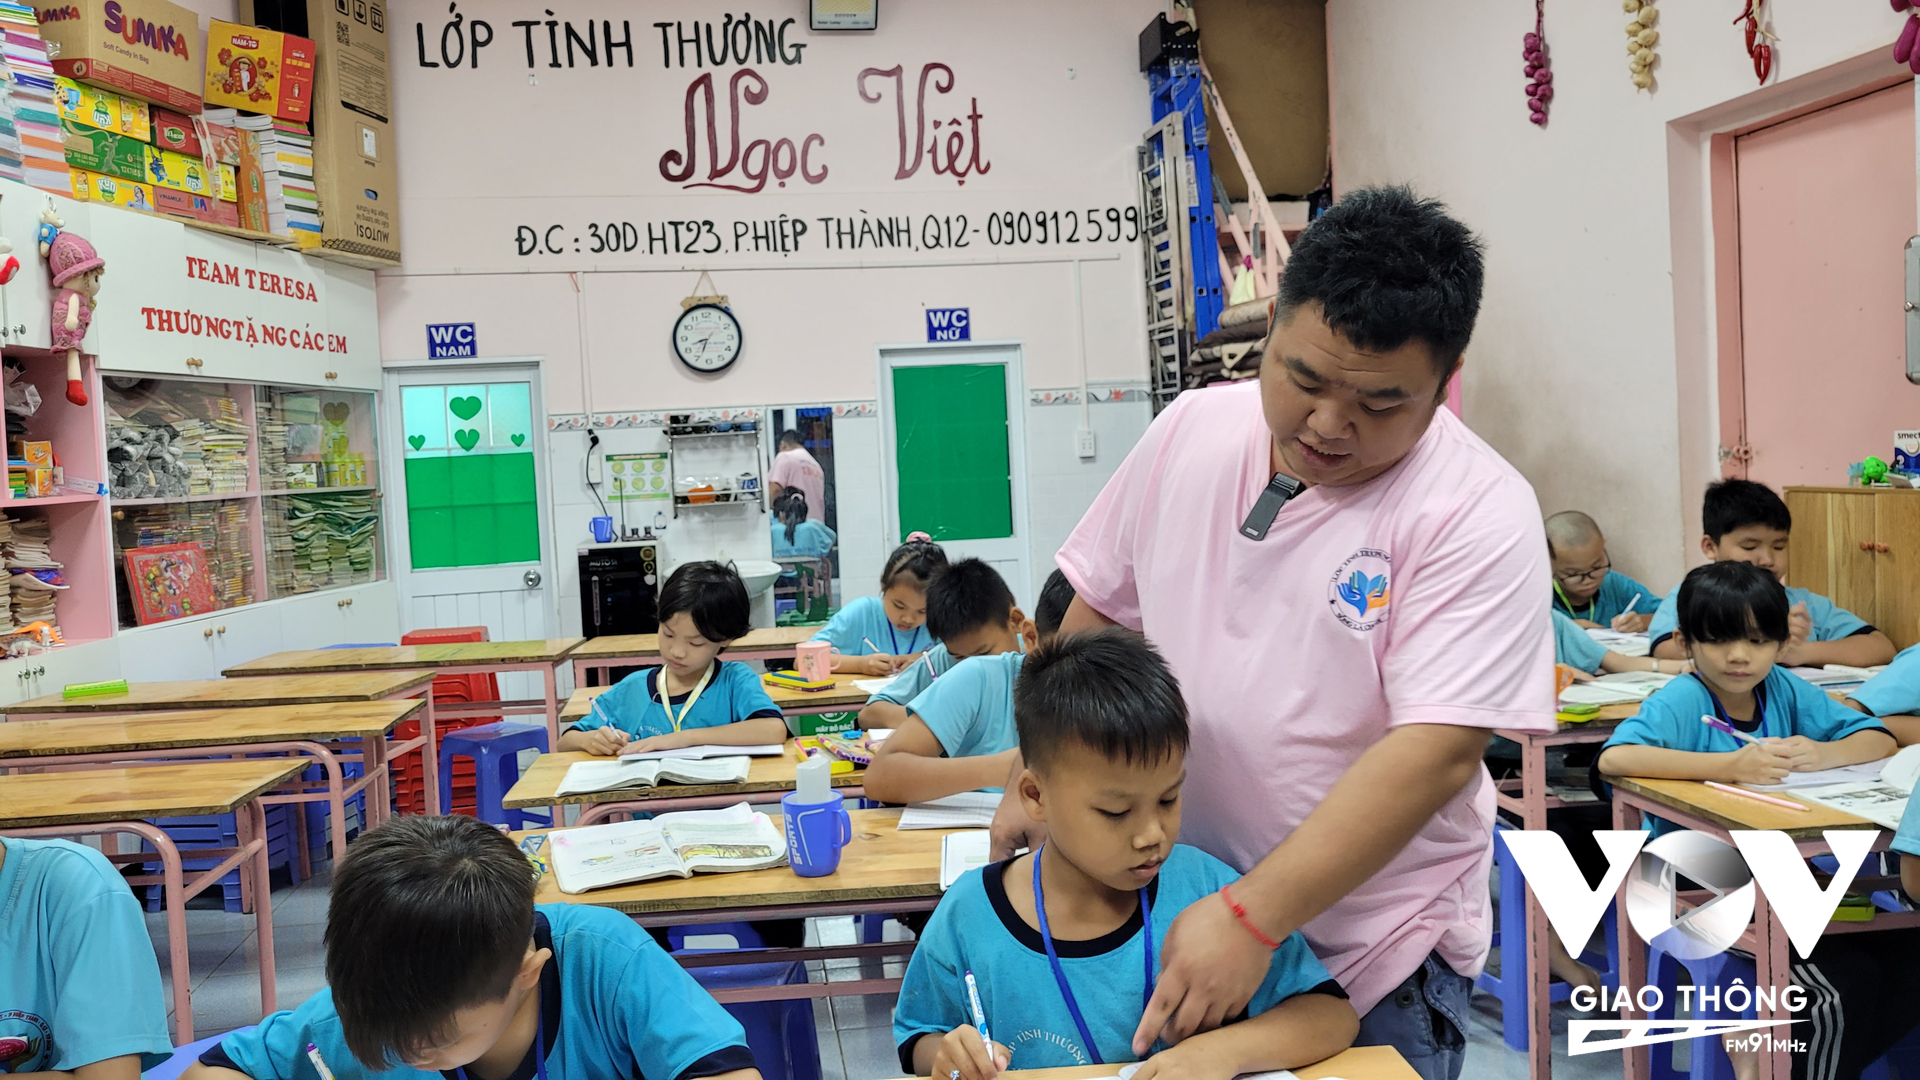 Thầy Huỳnh Quang Khải - một hướng dẫn viên du lịch đã mở ra lớp học tình thương Ngọc Việt